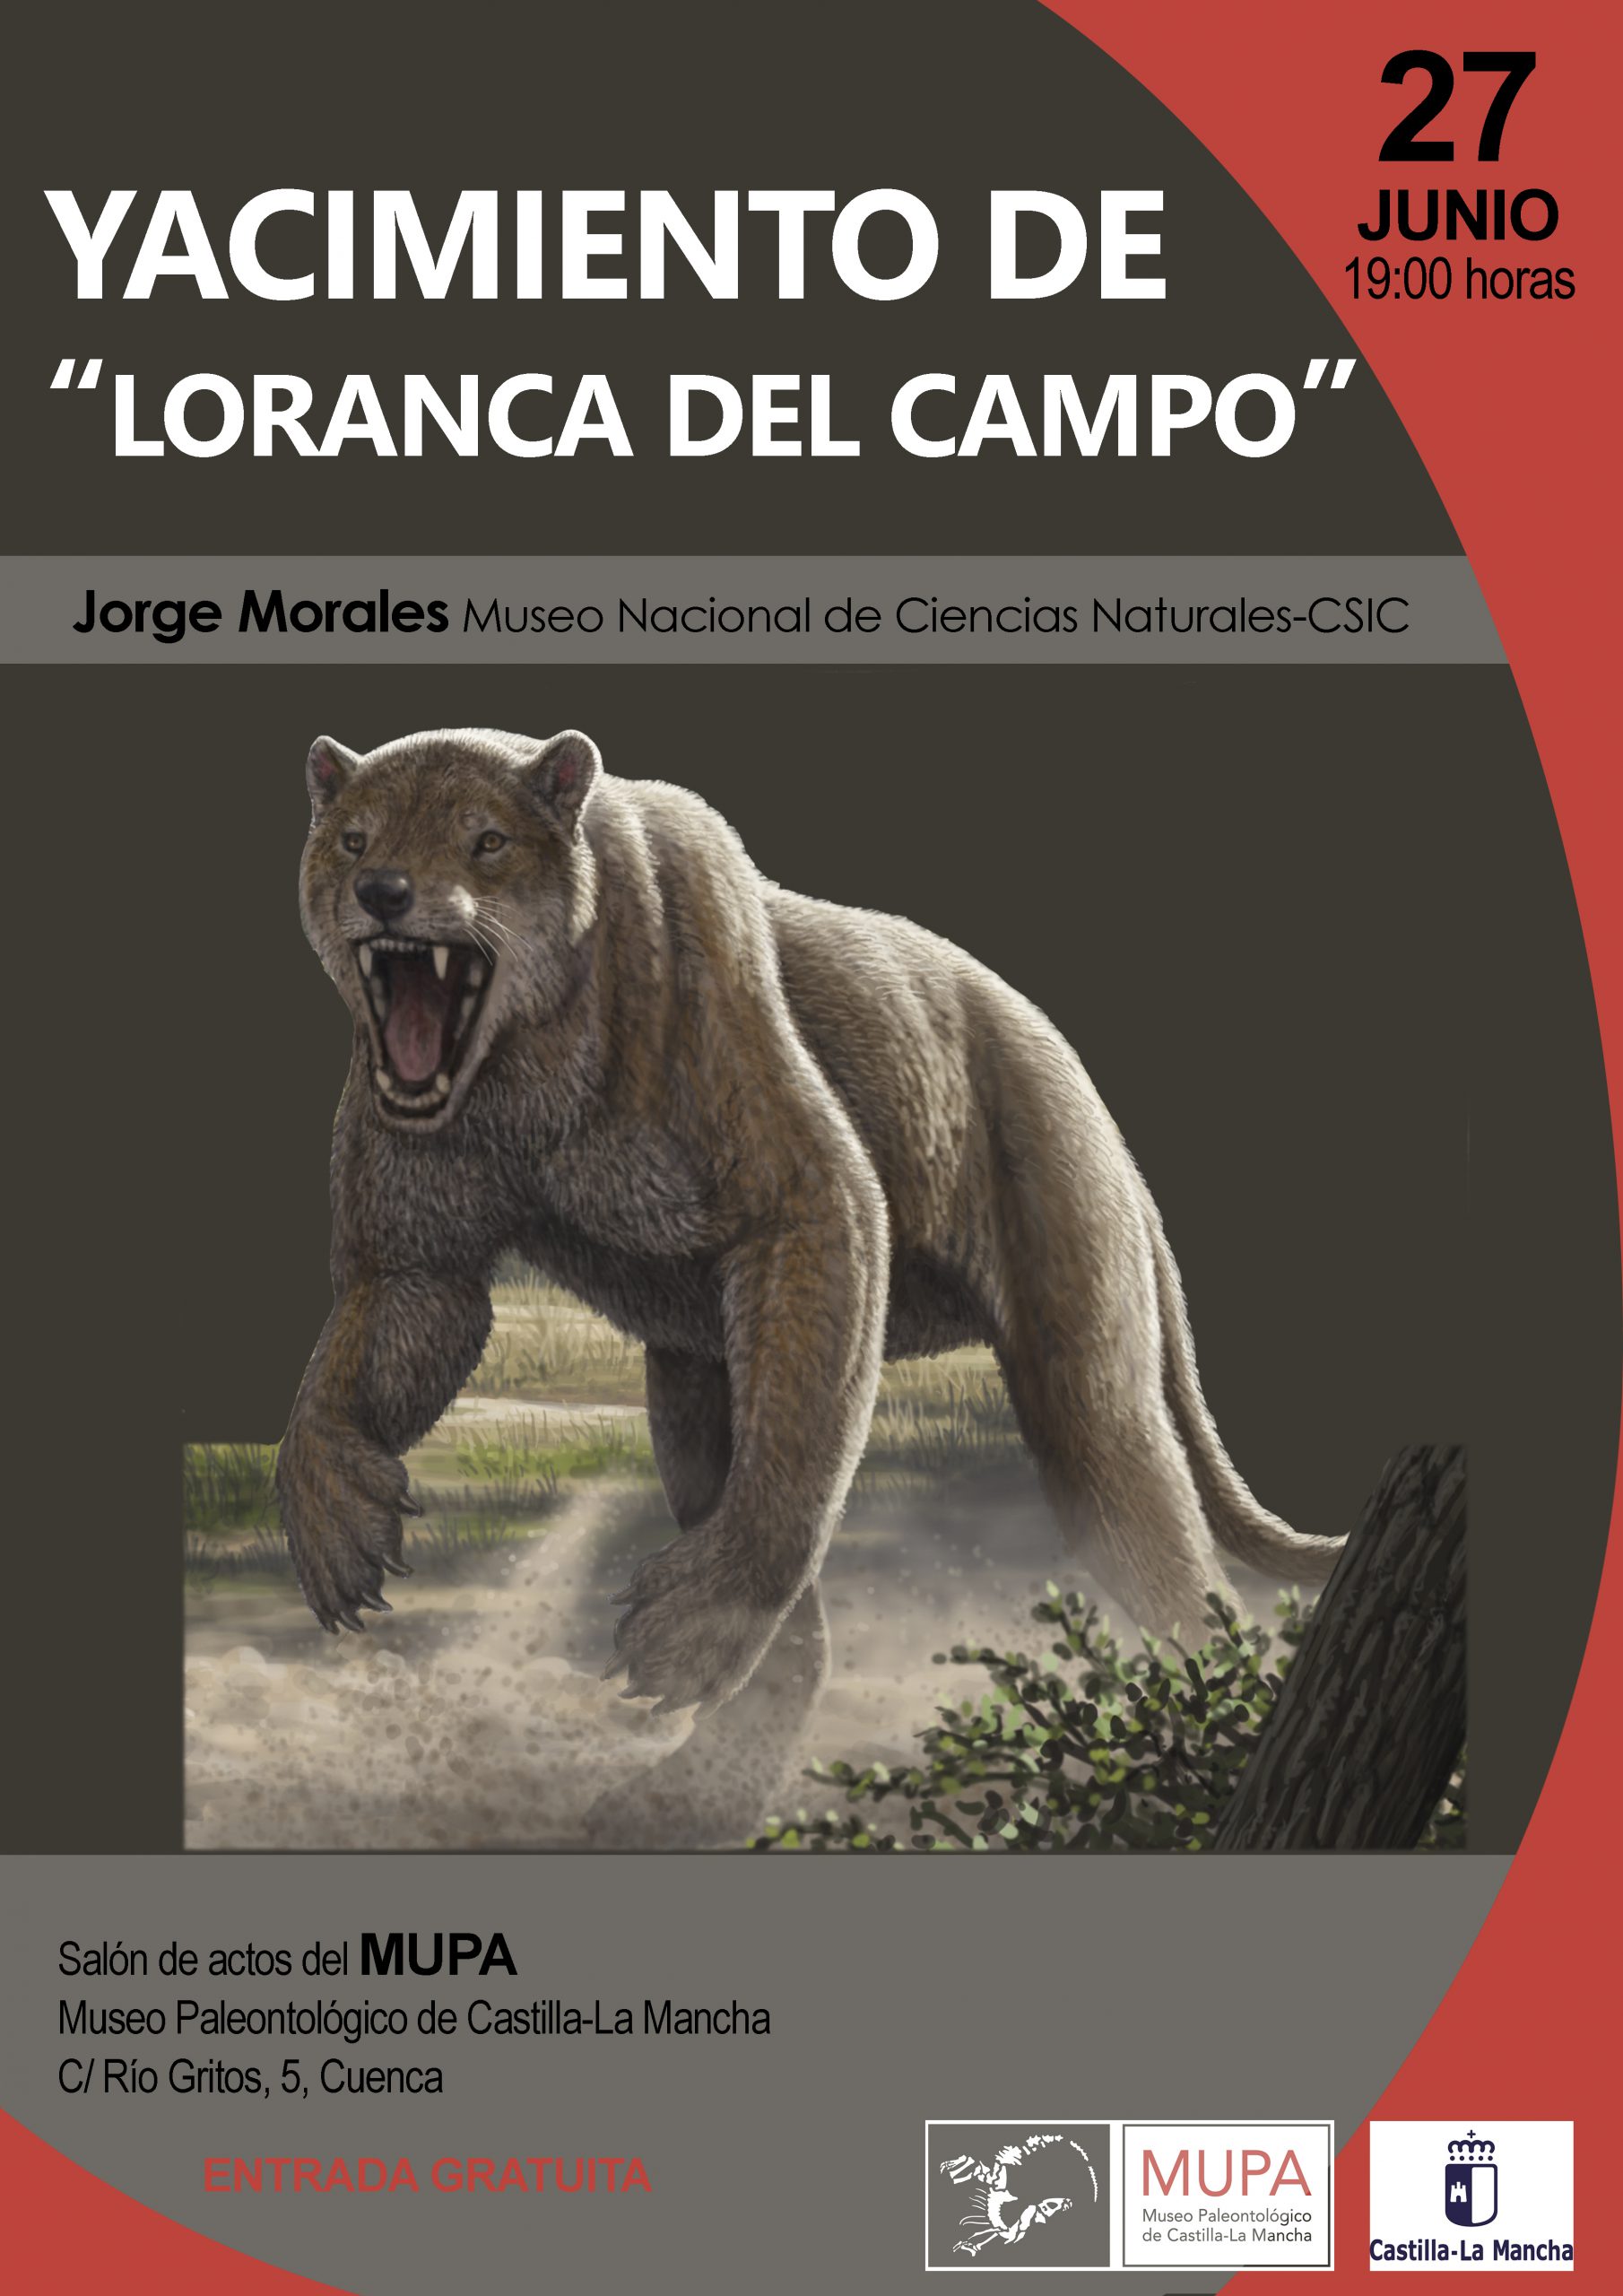 El Museo de Paleontología finaliza su ciclo de conferencias sobre Paleontología con el yacimiento de Loranca del Campo